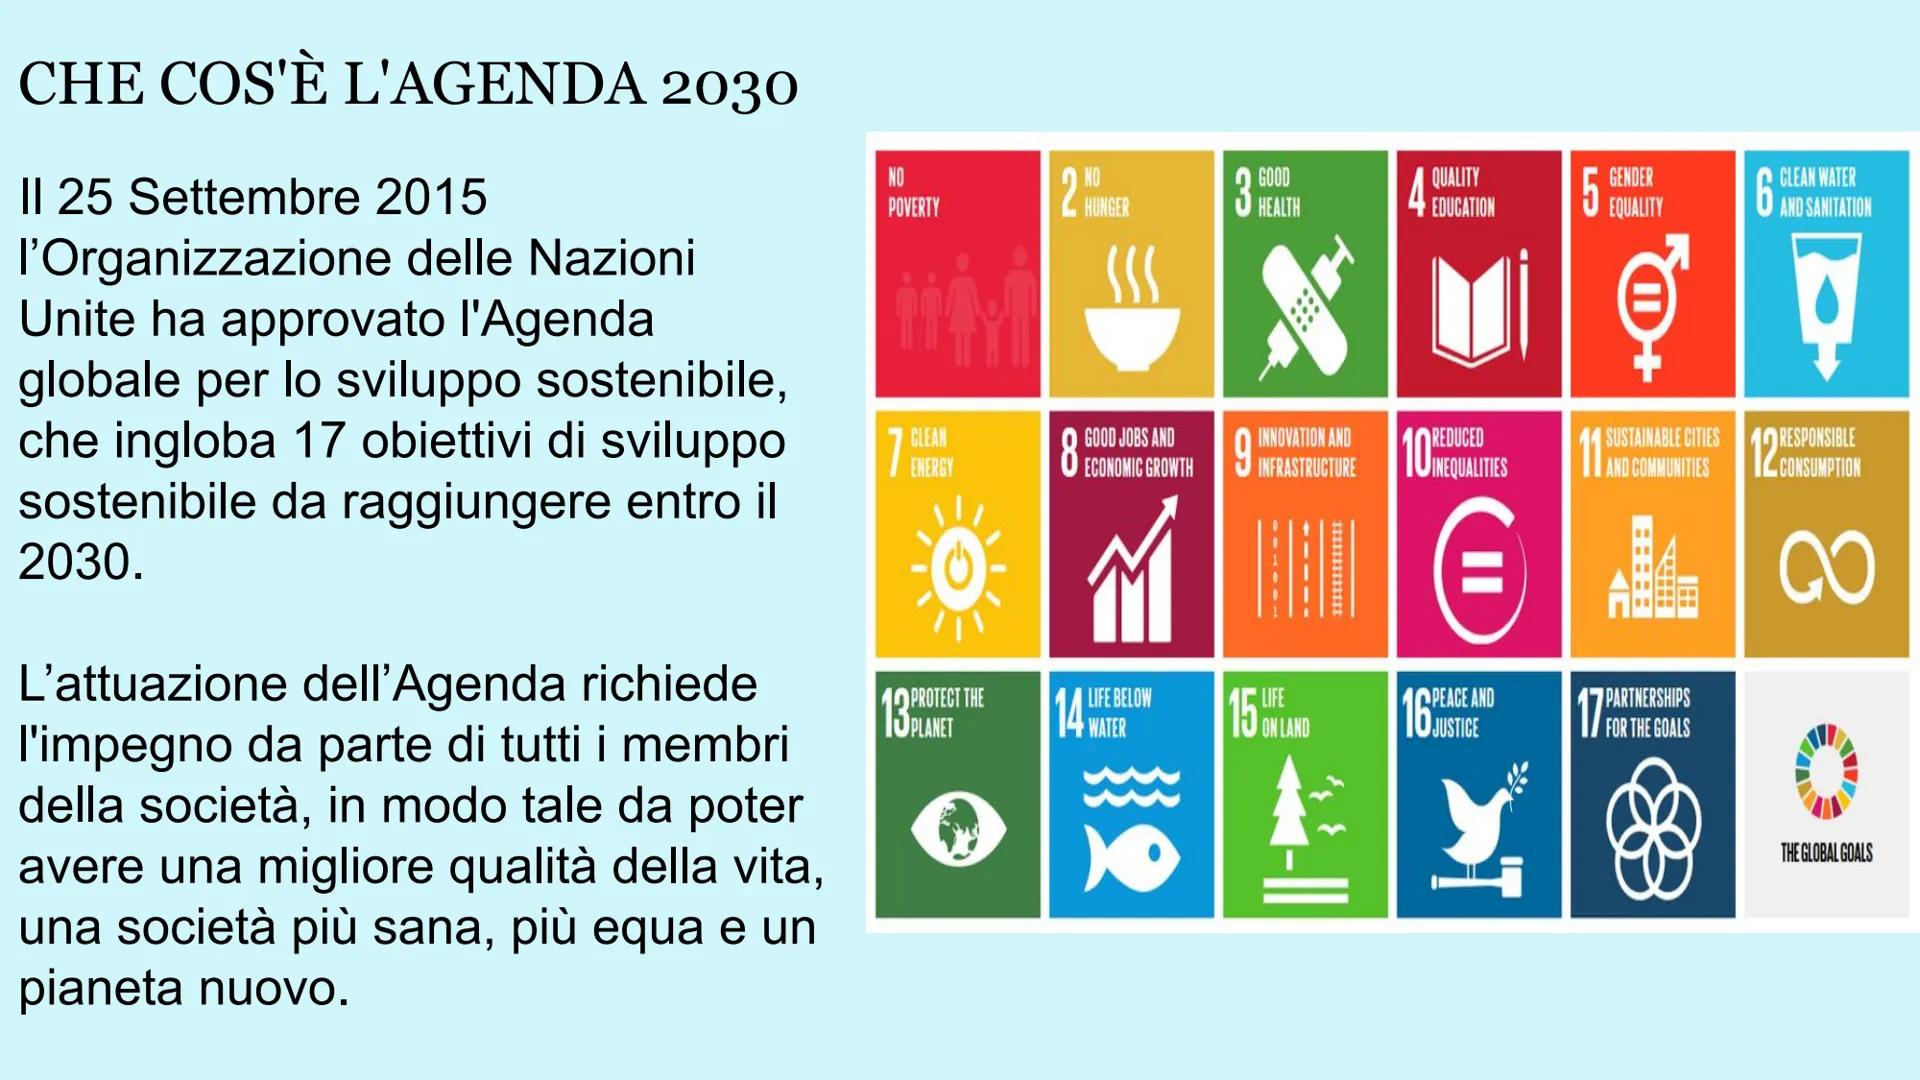 
<p>Il 25 settembre 2015, l'Organizzazione delle Nazioni Unite ha approvato l'Agenda Globale per lo Sviluppo Sostenibile, che include 17 obi